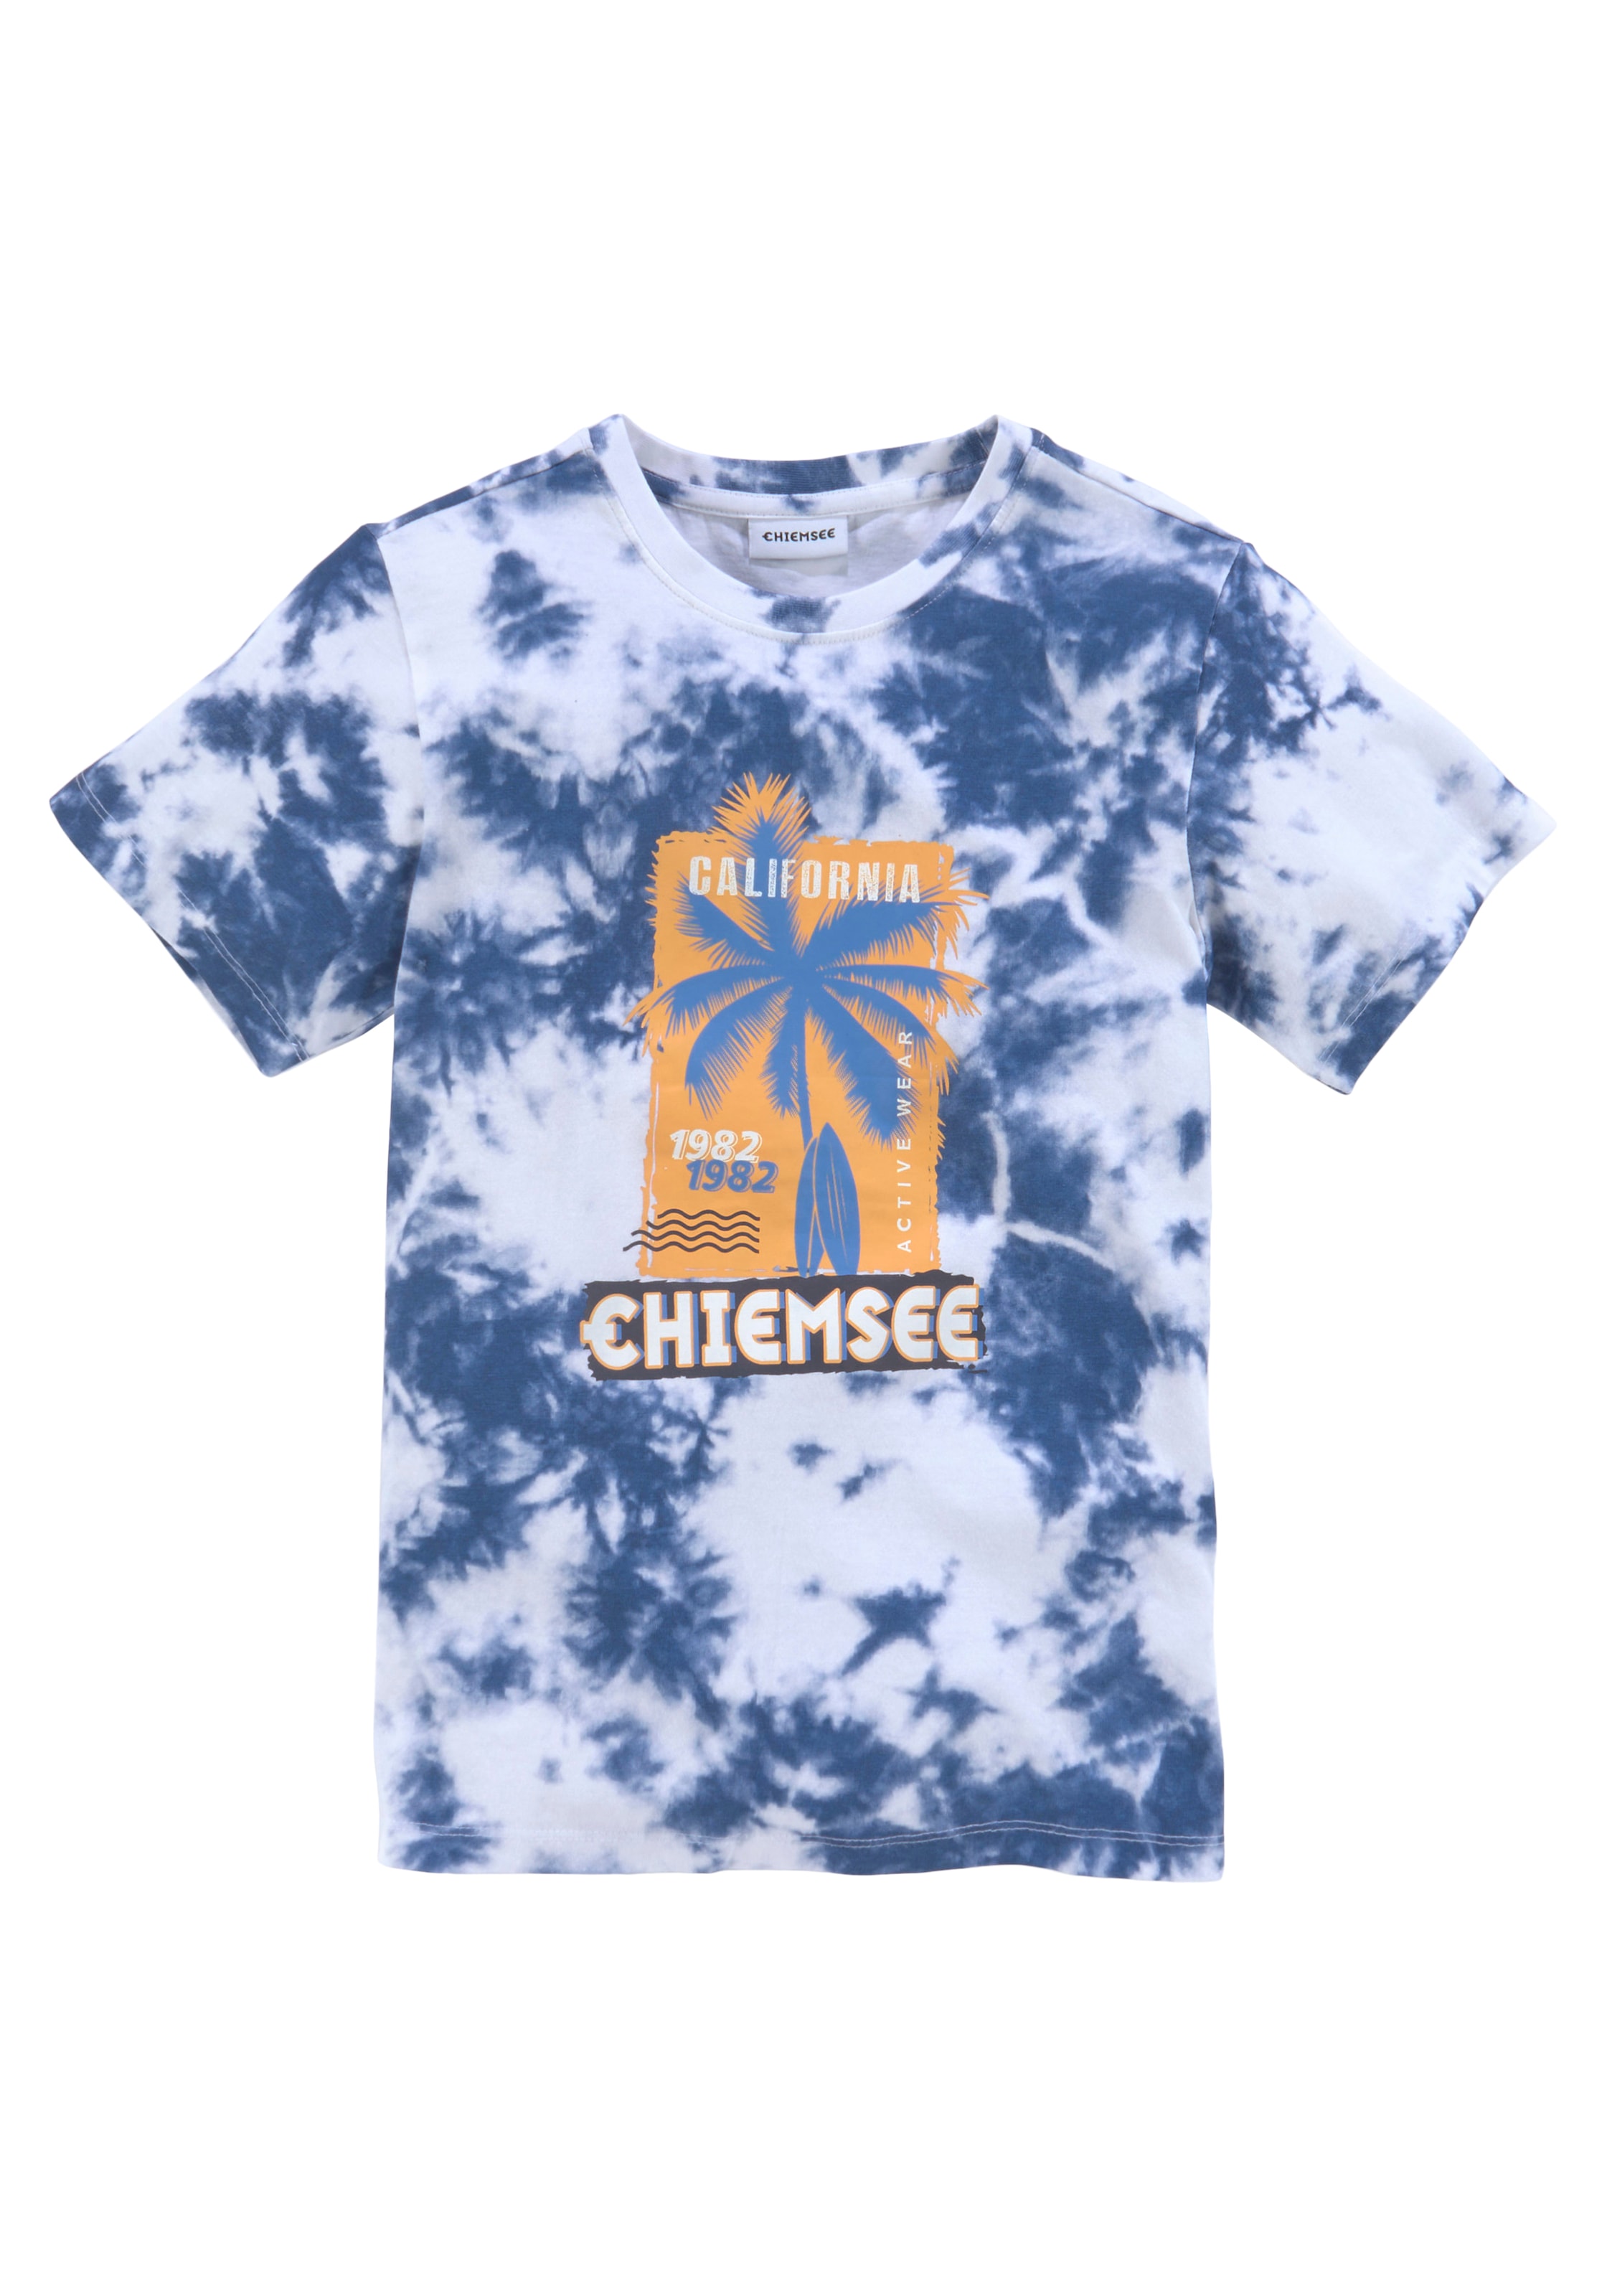 Chiemsee T-Shirt, BAUR in Batikoptik 